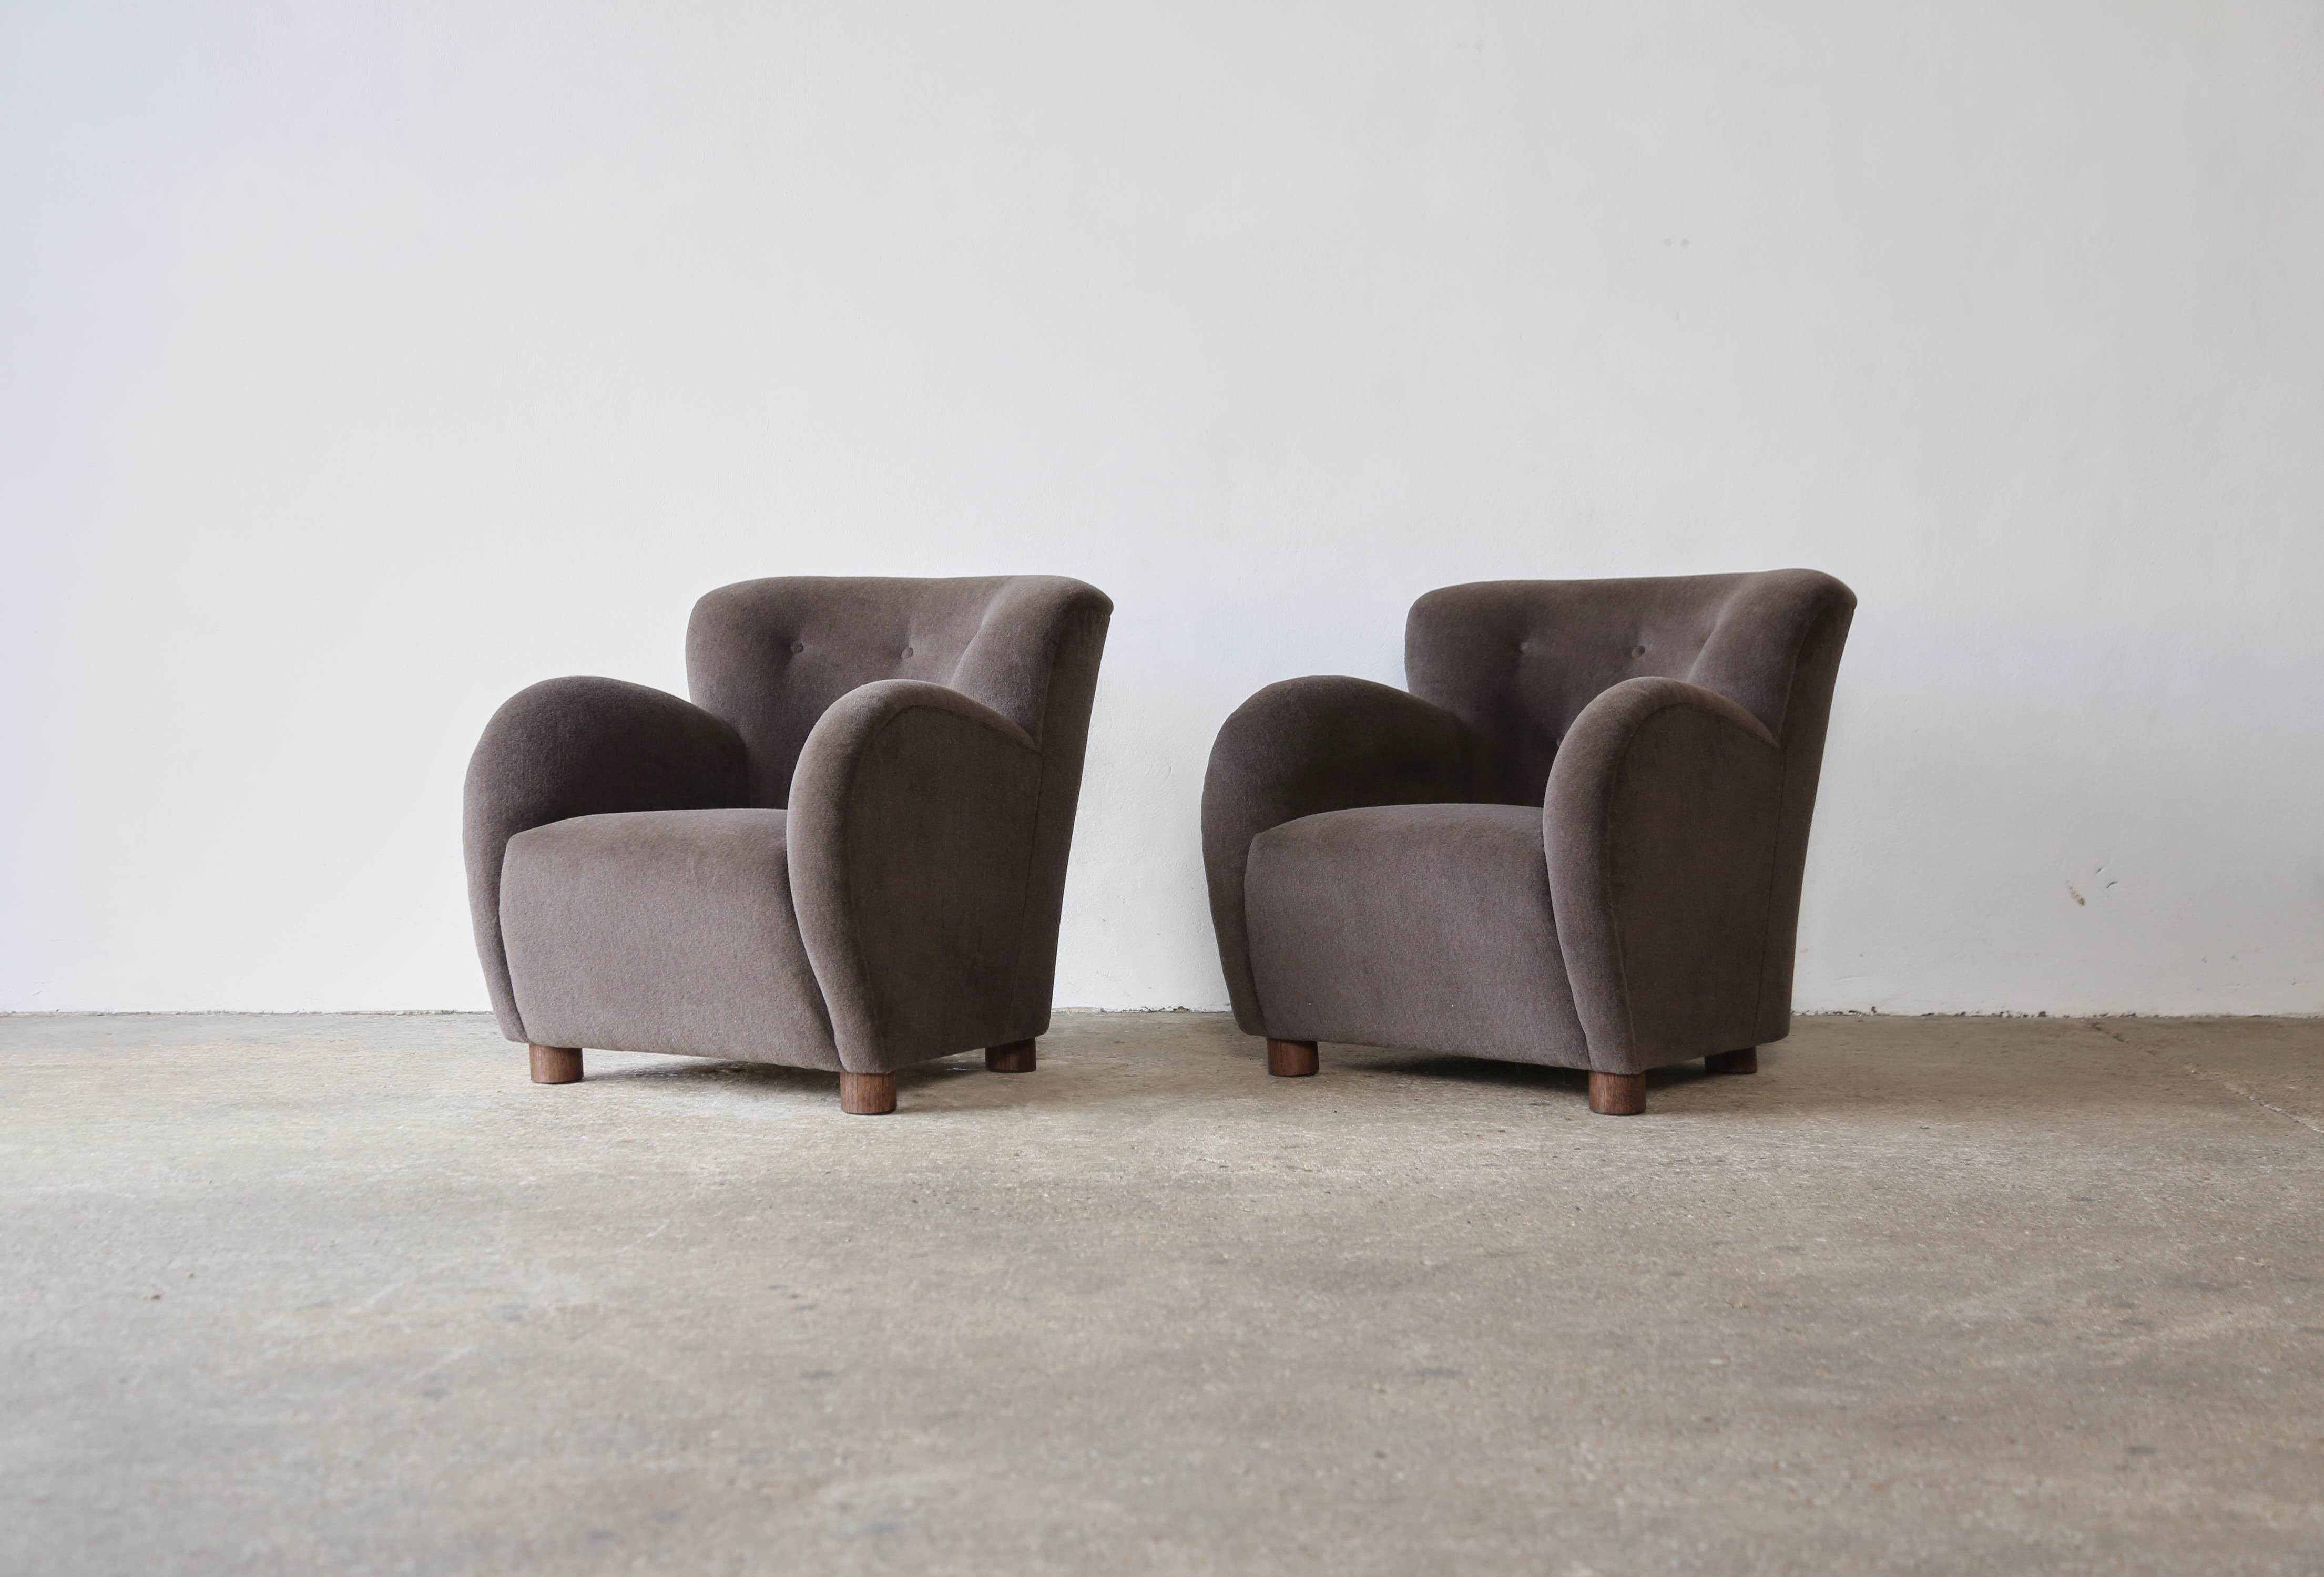 Superbe paire de fauteuils modernes à accoudoirs ronds de style danois. Structure en hêtre fabriquée à la main, assise à ressorts et nouvellement recouverte d'un tissu en pure laine d'alpaga doux et de première qualité, pieds en chêne massif.